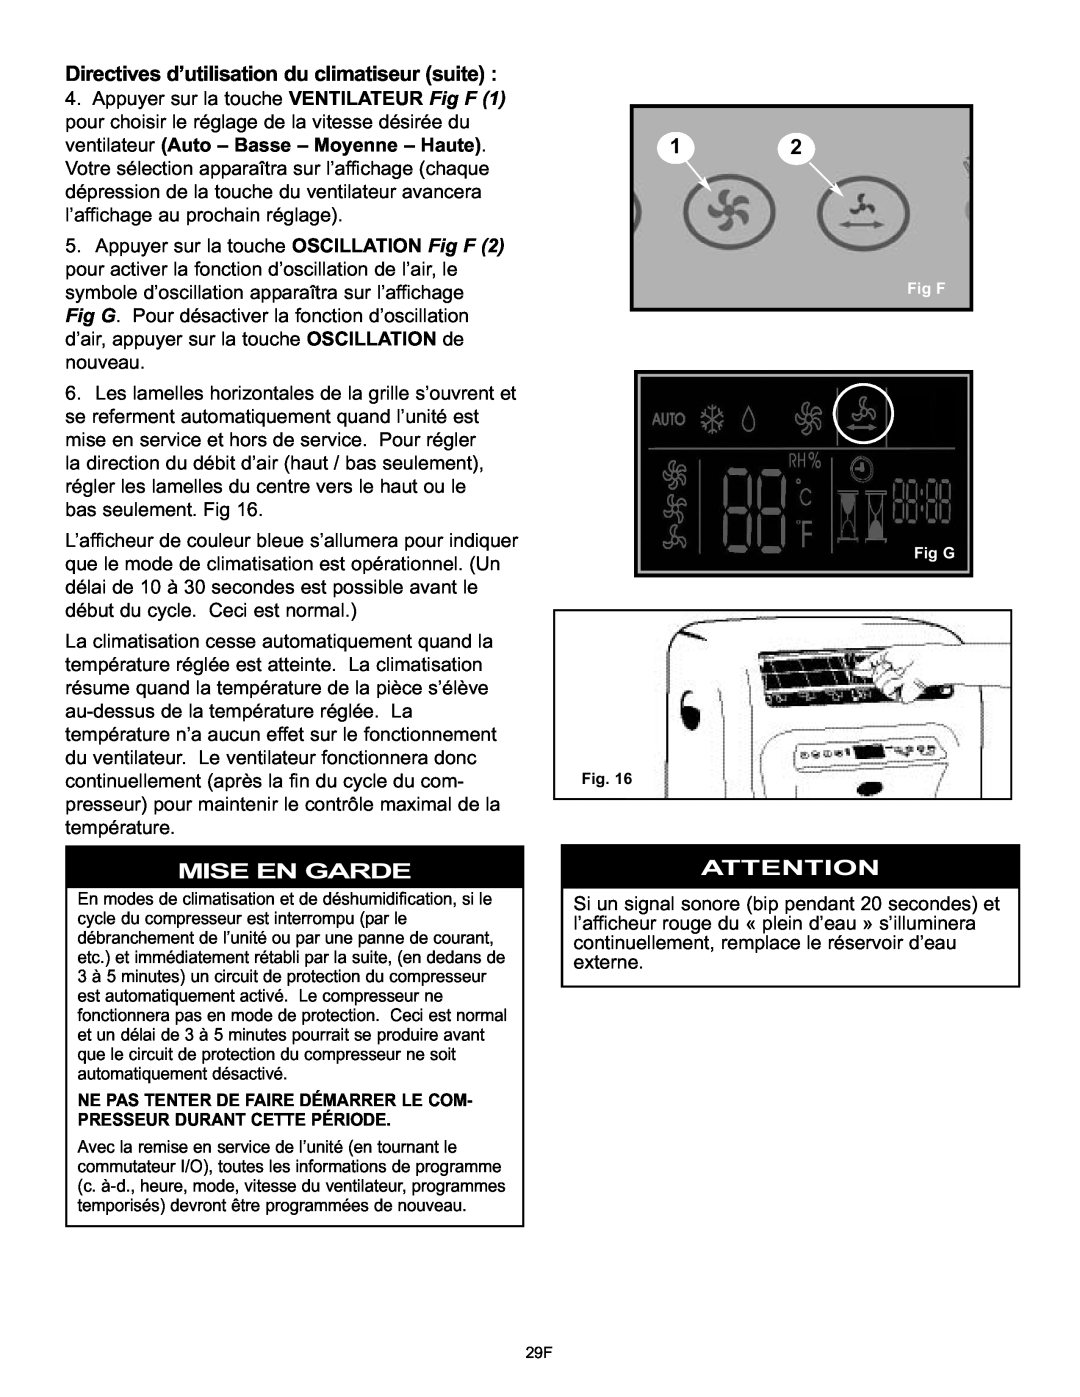 Danby DPAC120061 owner manual Directives d’utilisation du climatiseur suite, Mise En Garde, Fig F Fig G 